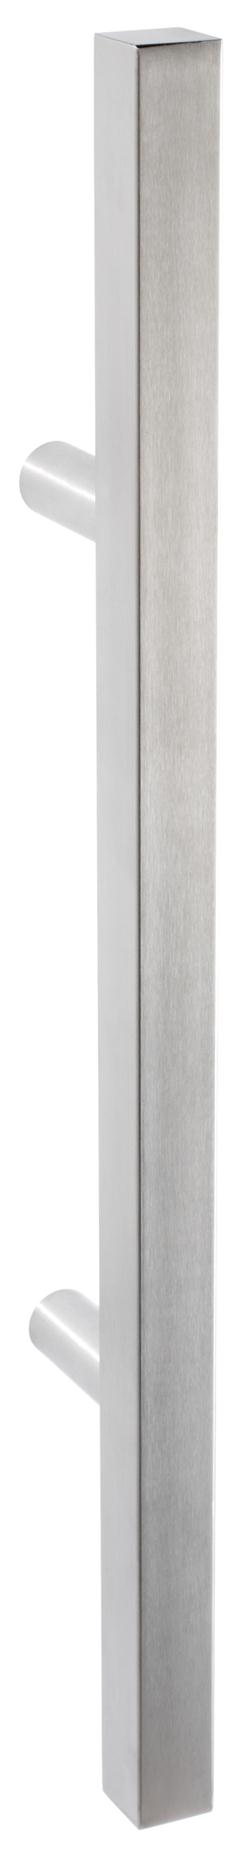 door handle tt square 20/200 mm x 300 mm x 65 mm